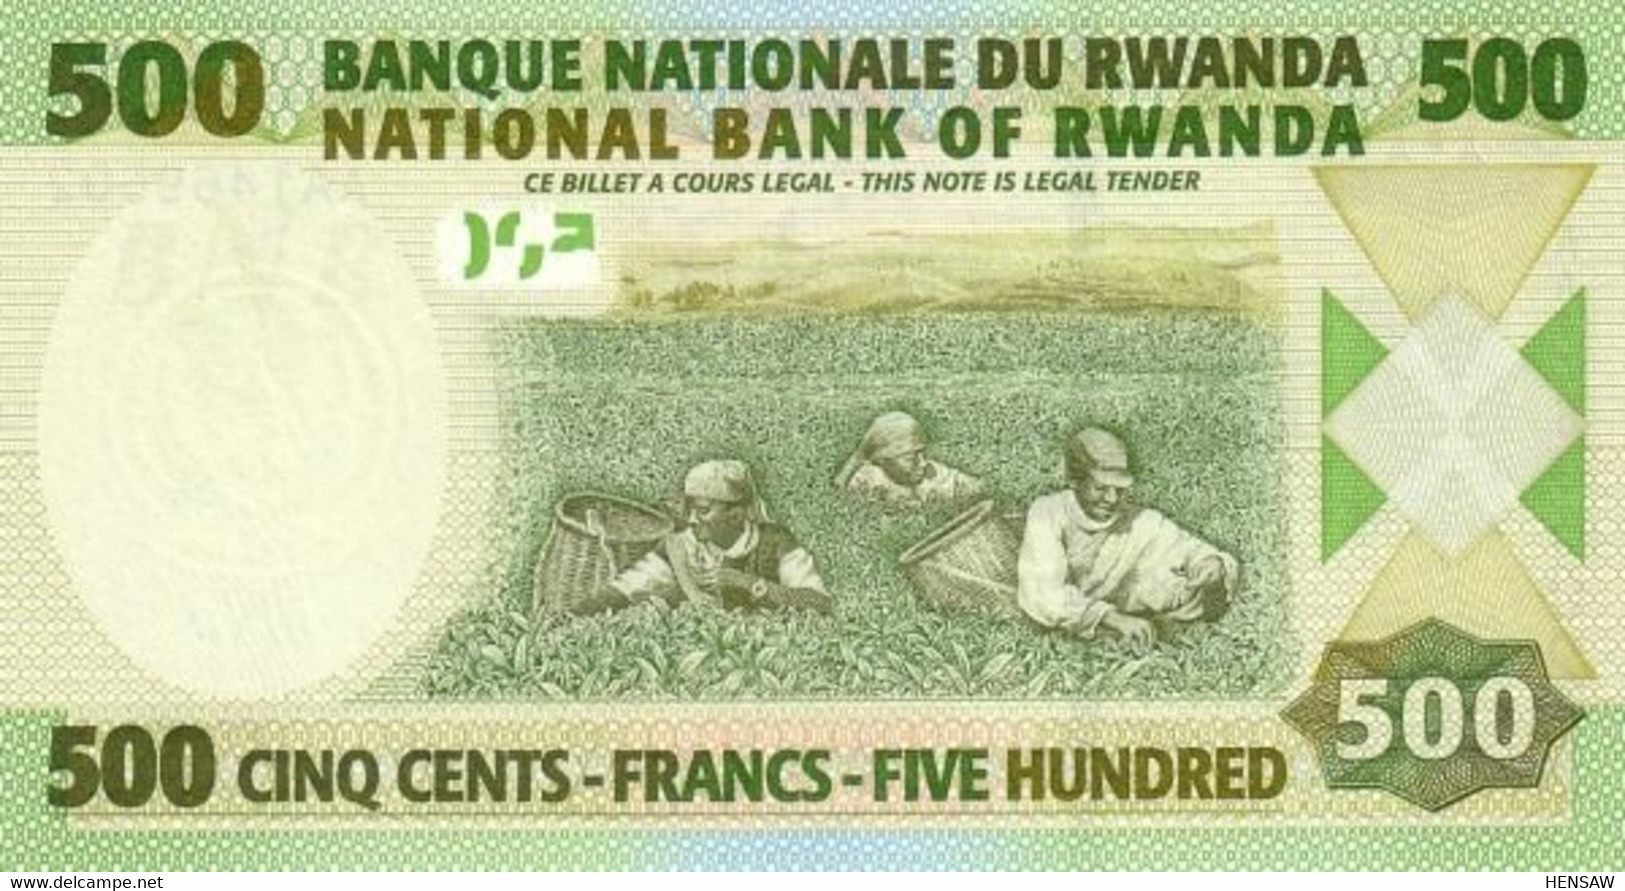 RWANDA 500 FRANCS 2004 P 30 UNC SC NUEVO - Rwanda